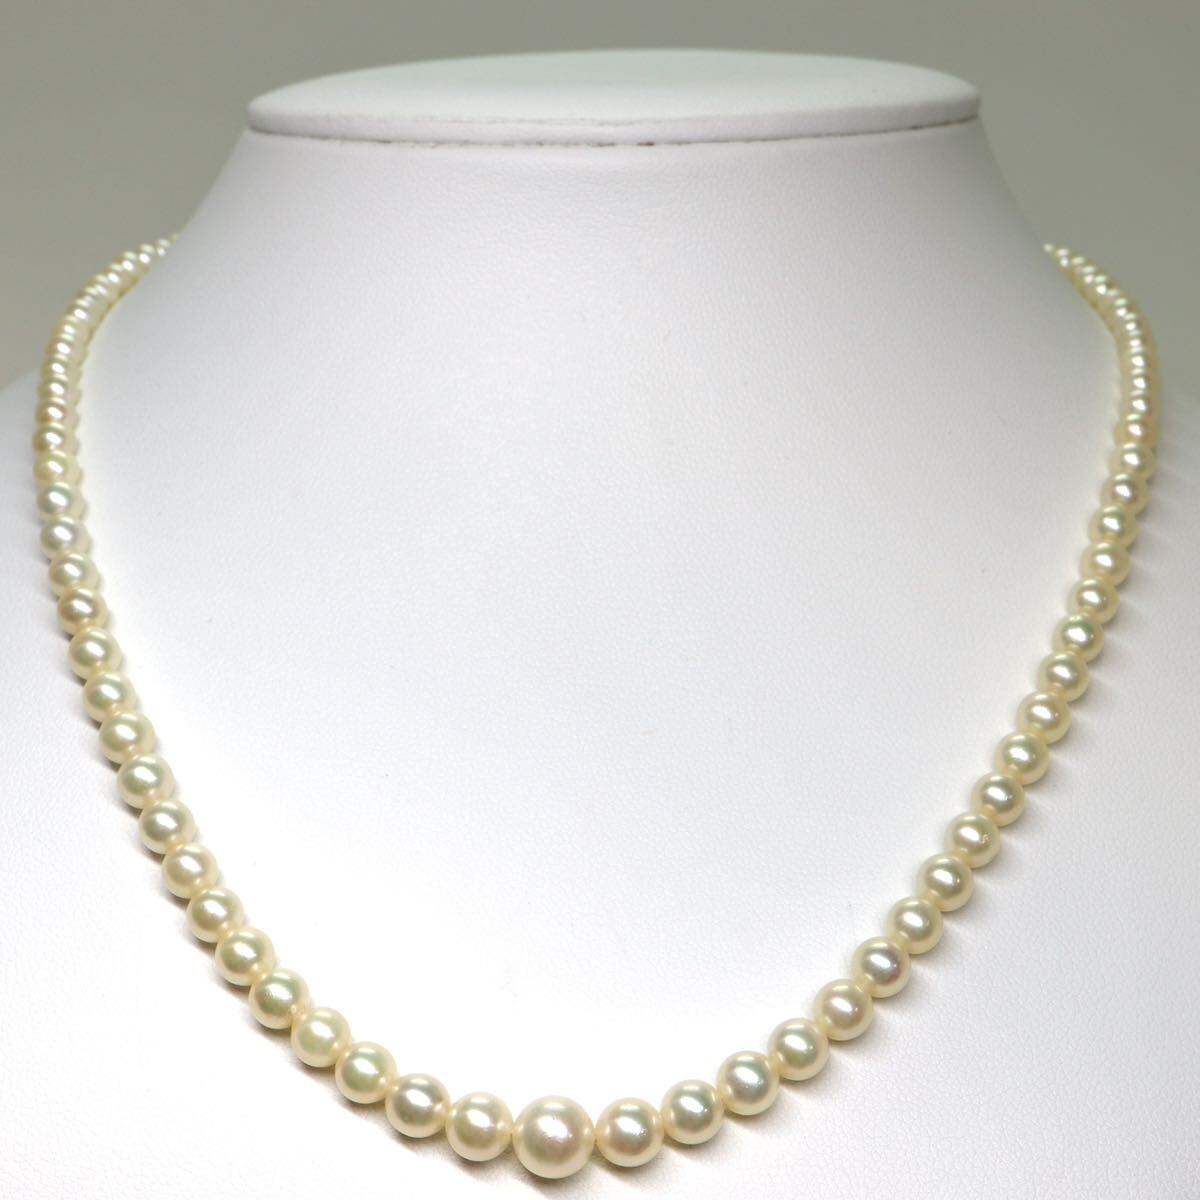 《アコヤ本真珠ネックレス》A 約3.5-7.5mm珠 14.9g 約44cm pearl necklace ジュエリー jewelry CC0/CC0の画像2